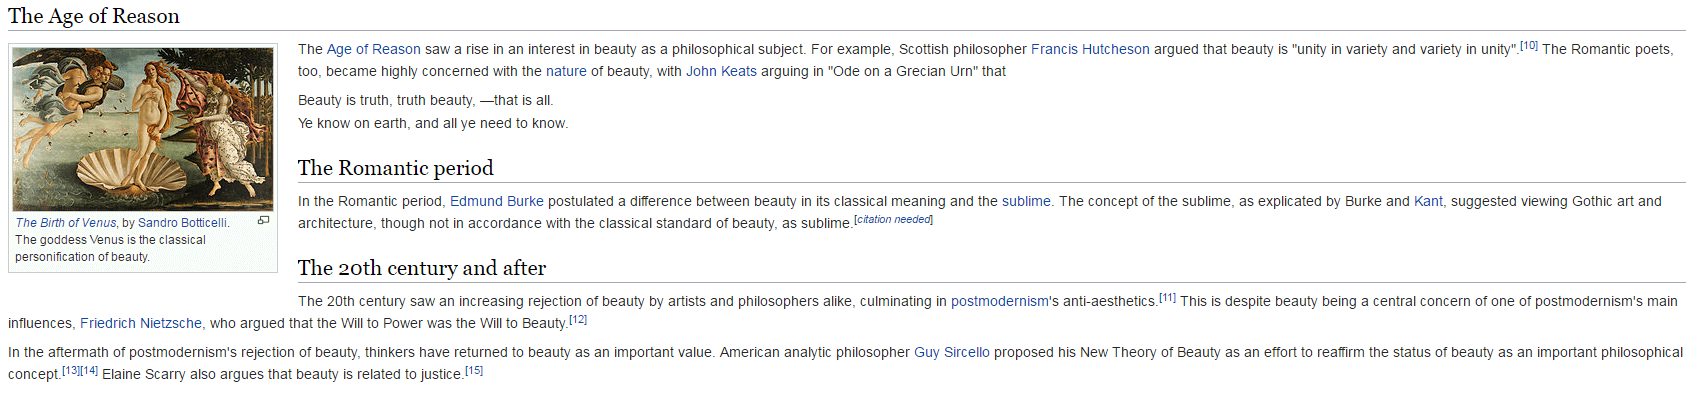 Aperçu de l’article original de Wikipedia sur le thème Beauty